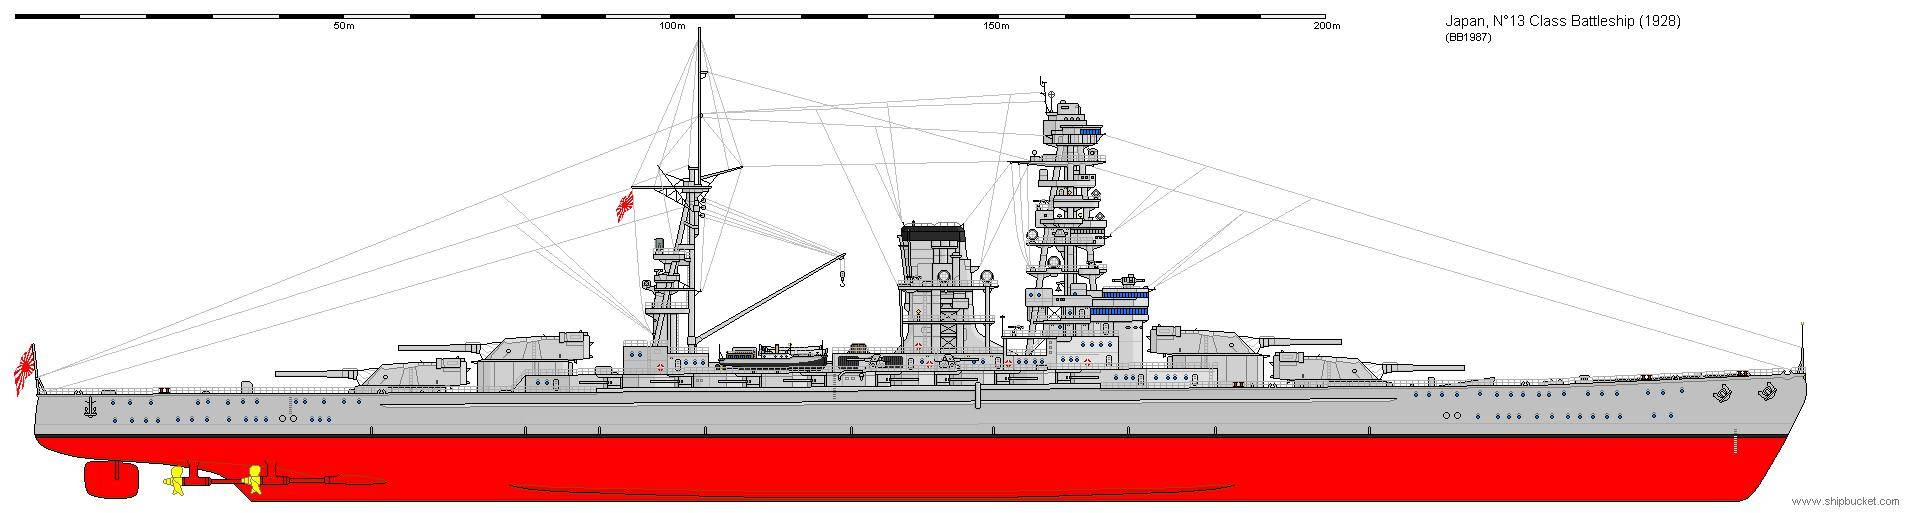 原创高卢雄鸡著名战舰的起点:浅谈一战后法国战列舰的几种设计草案